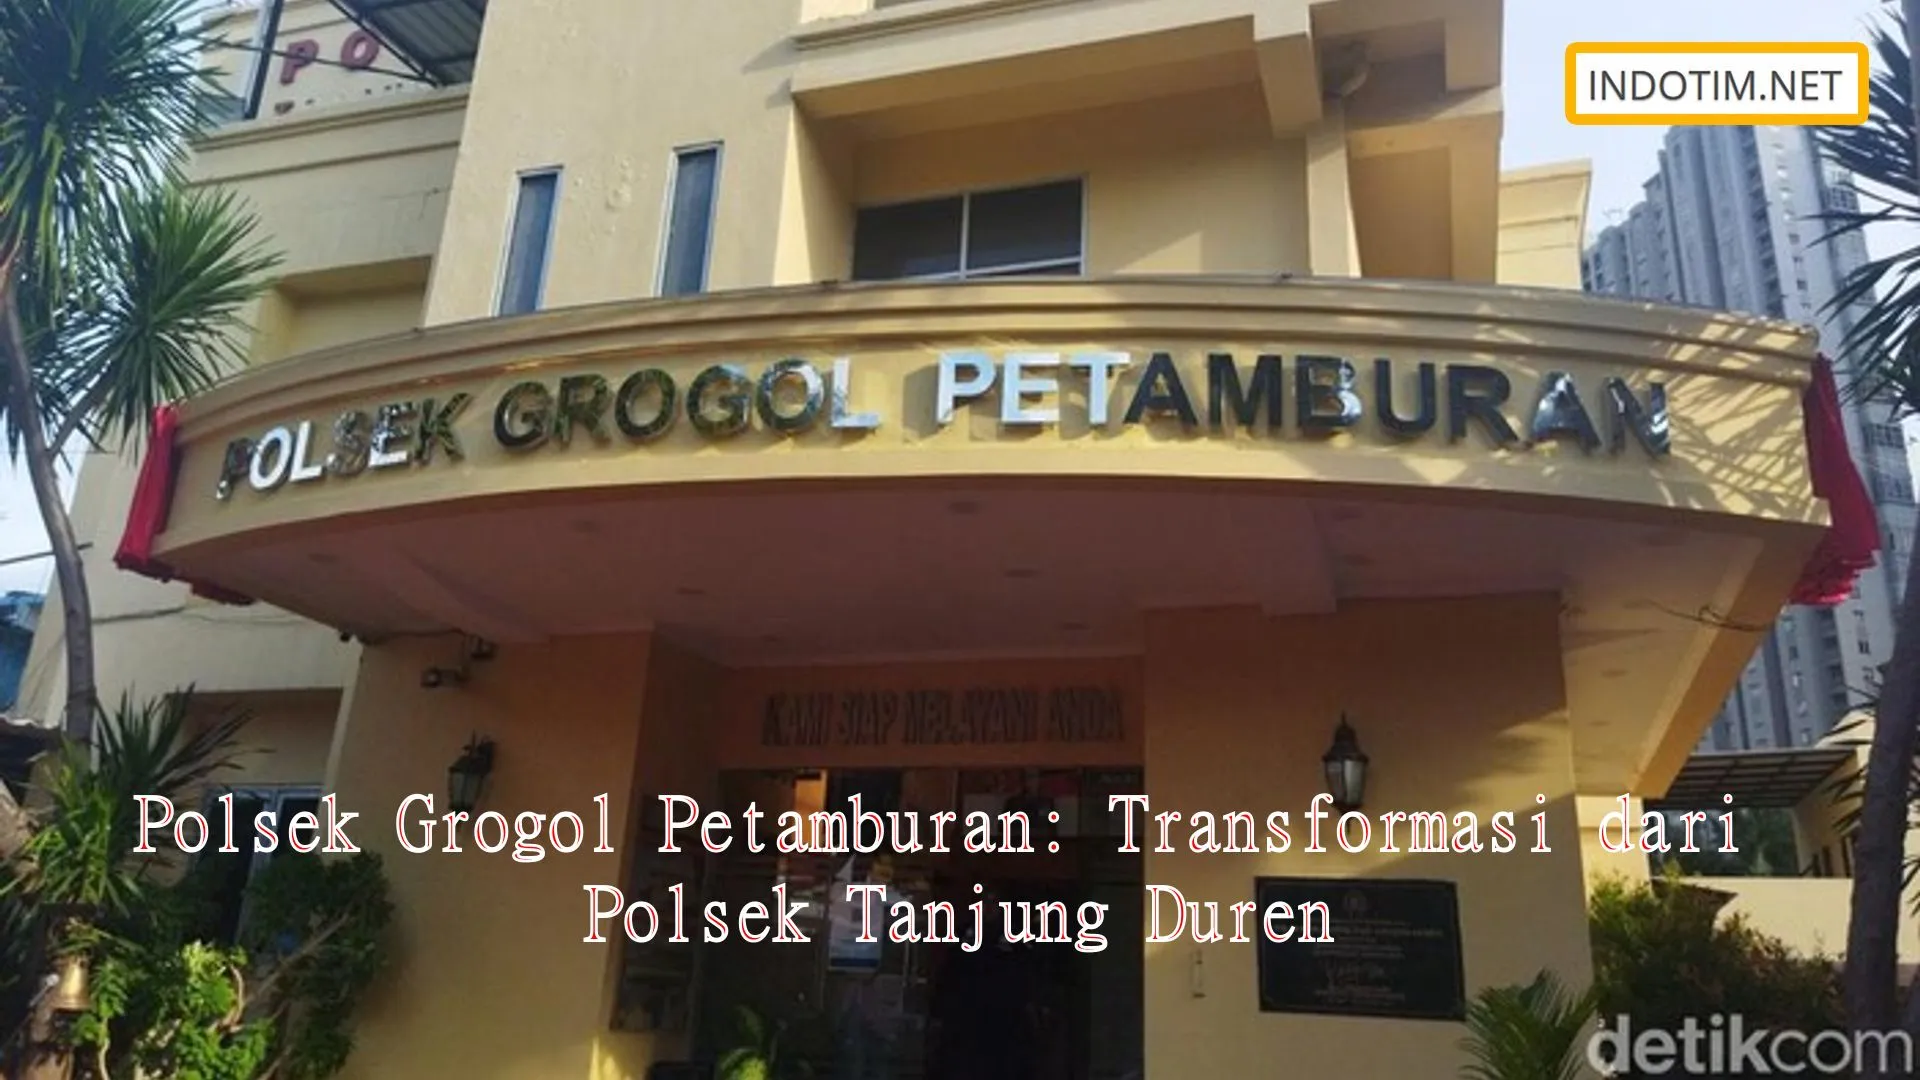 Polsek Grogol Petamburan: Transformasi dari Polsek Tanjung Duren